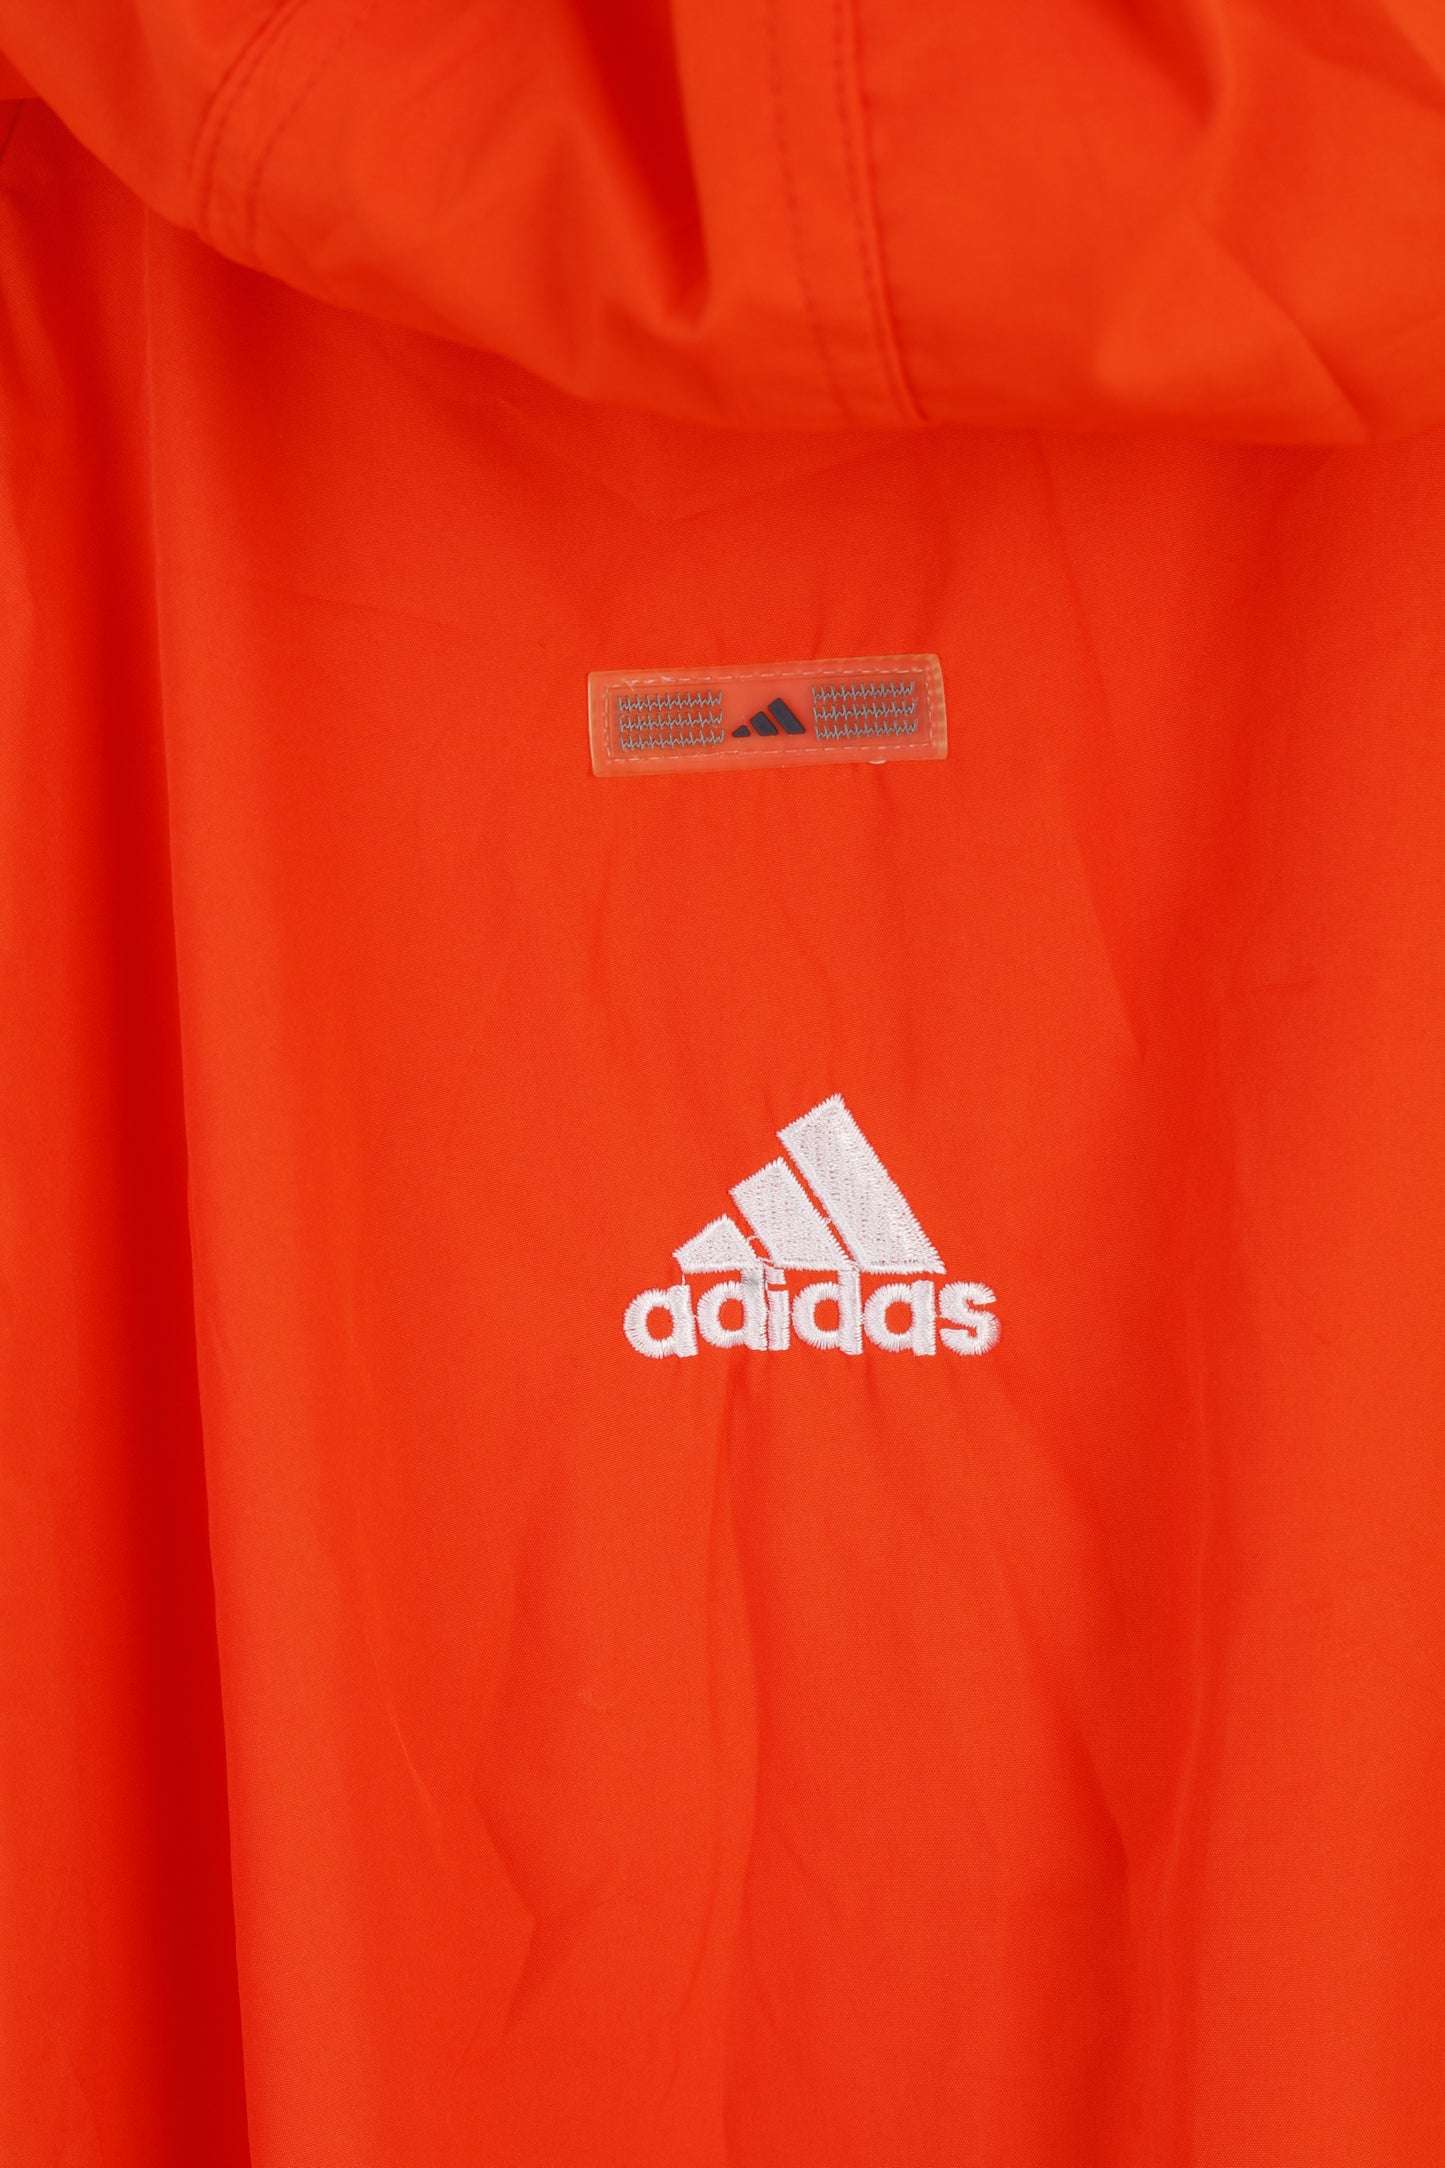 Adidas Men L 182 Jacket Orange Vintage Hooded Sportswear Full Zip Top